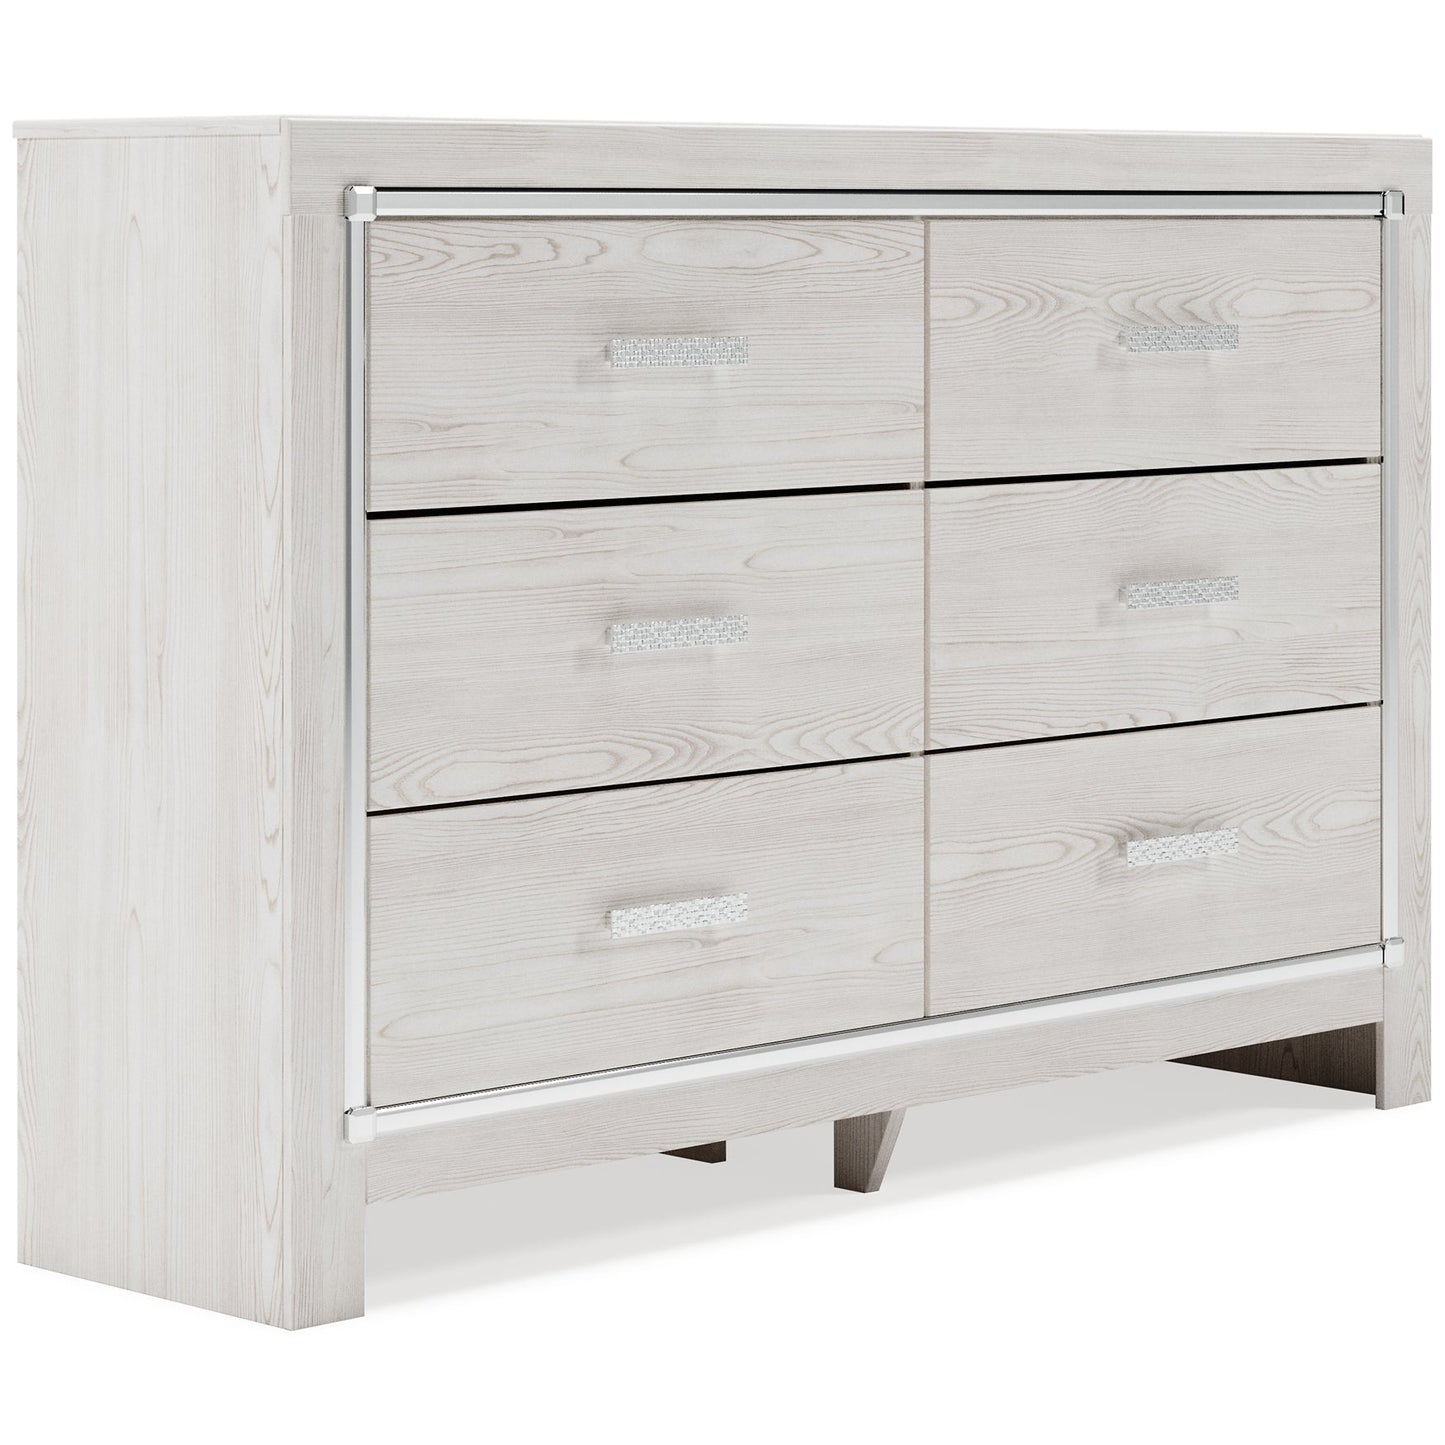 Altyra Queen Panel Headboard with Dresser Cloud 9 Mattress & Furniture